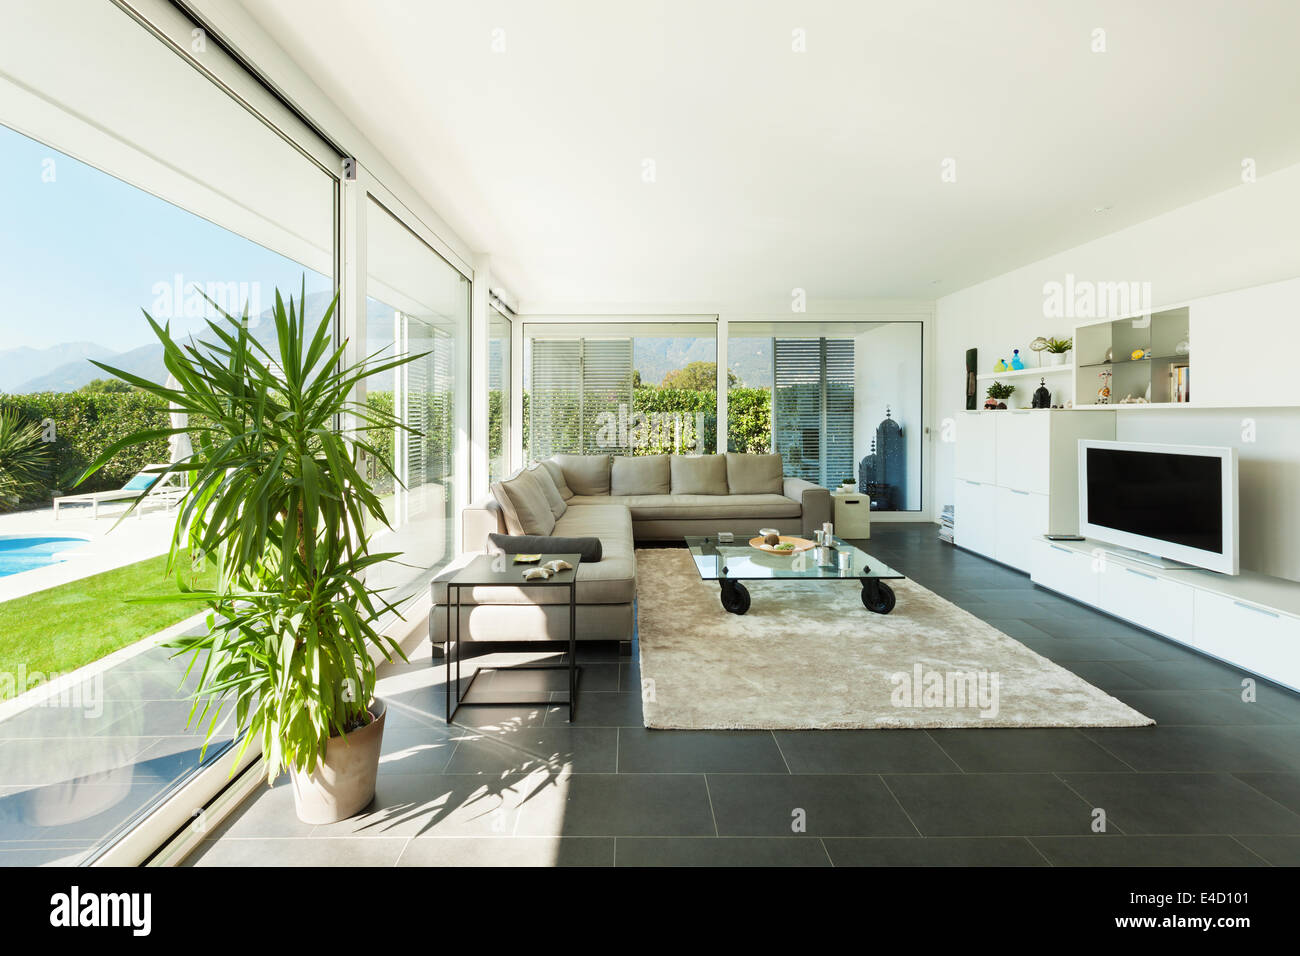 Moderne Villa, Interieur, schöne Wohnzimmer Stockfotografie - Alamy